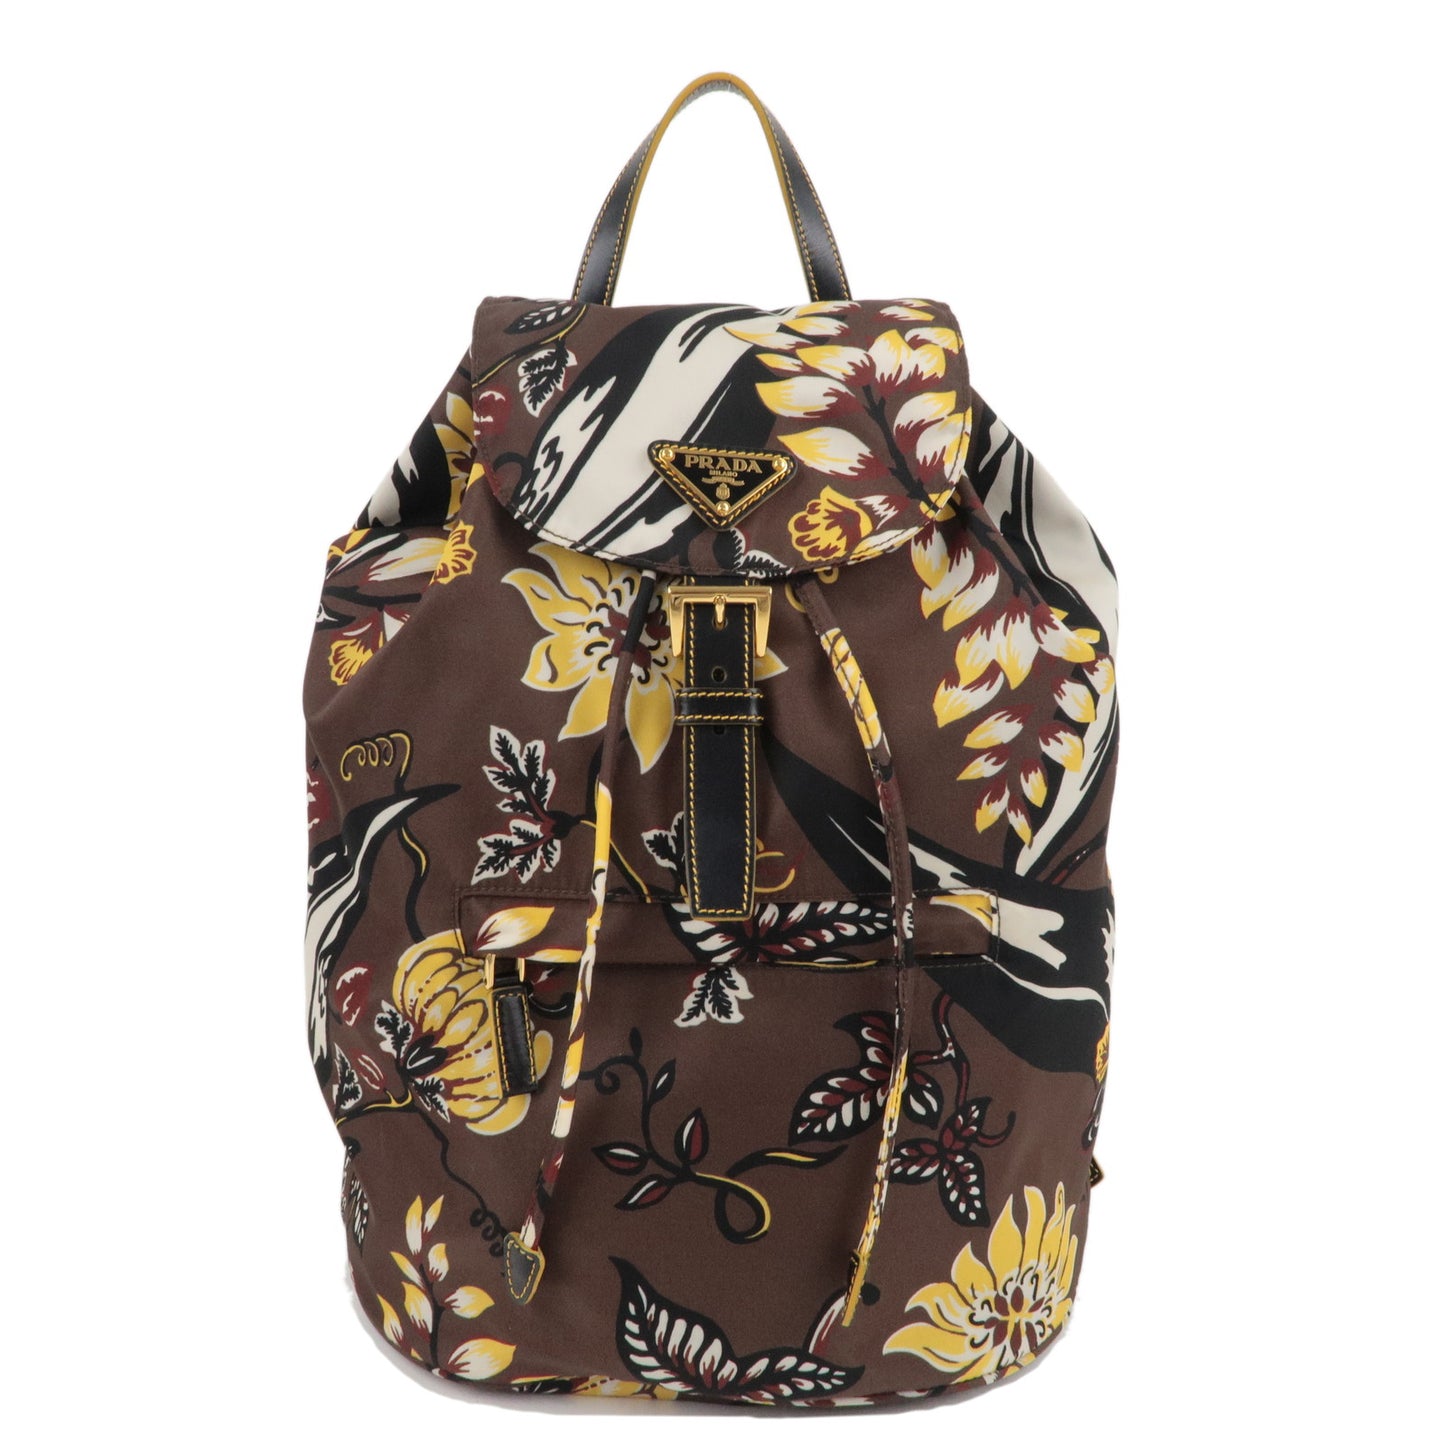 PRADA-Nylon-Leather-Backpack-Ruck-Sack-Flower-Pattern-1BZ032